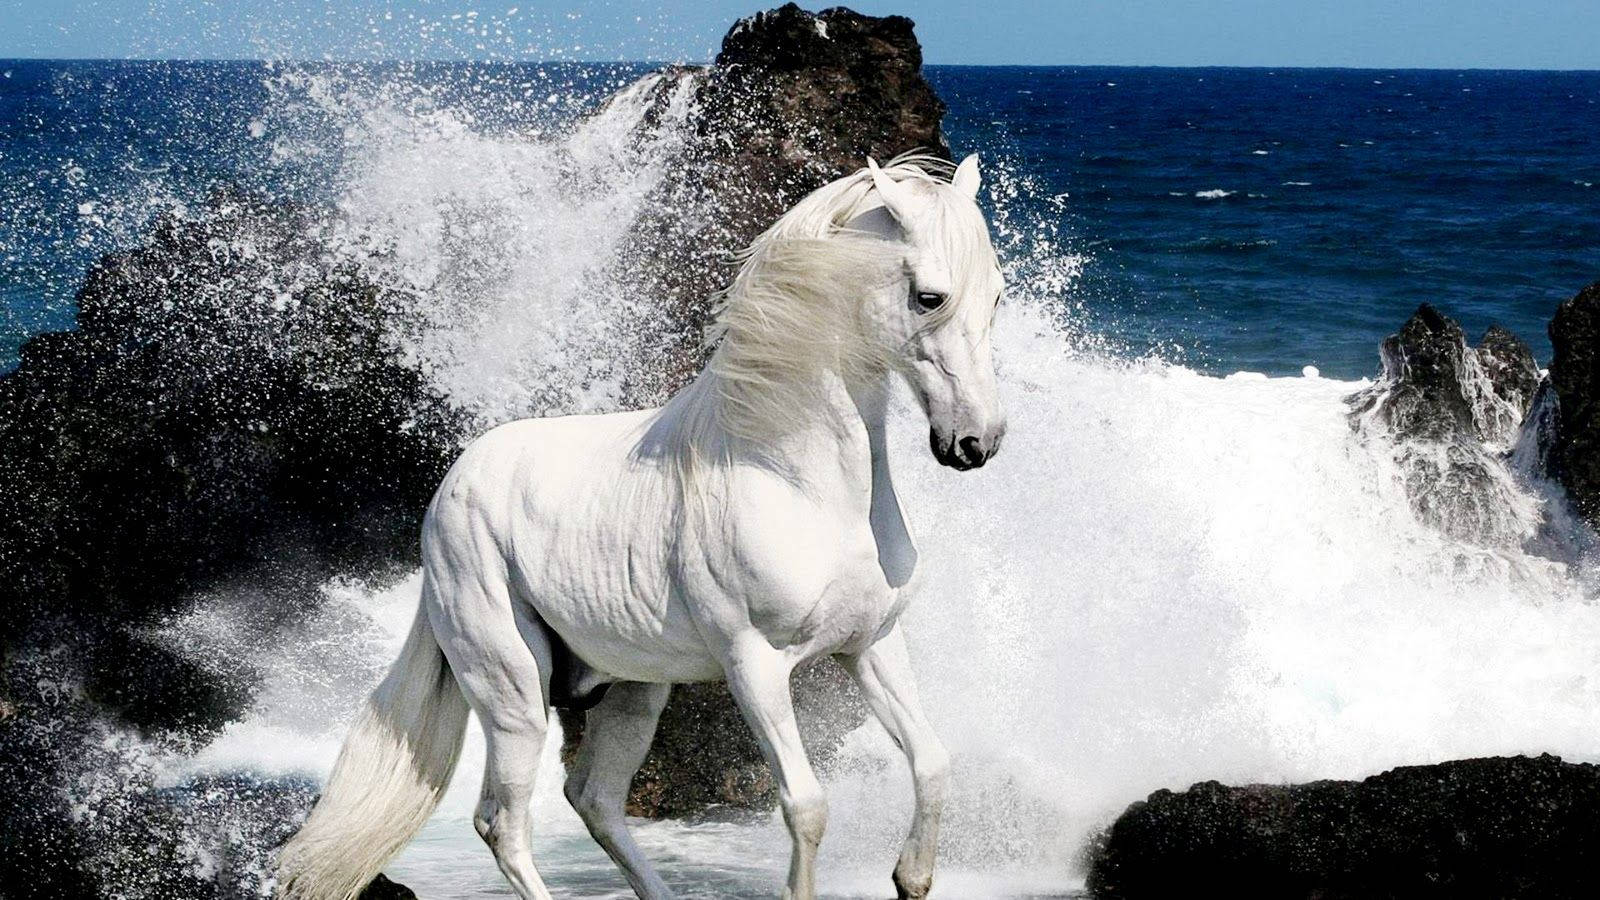 Splashing Waves On White Horse